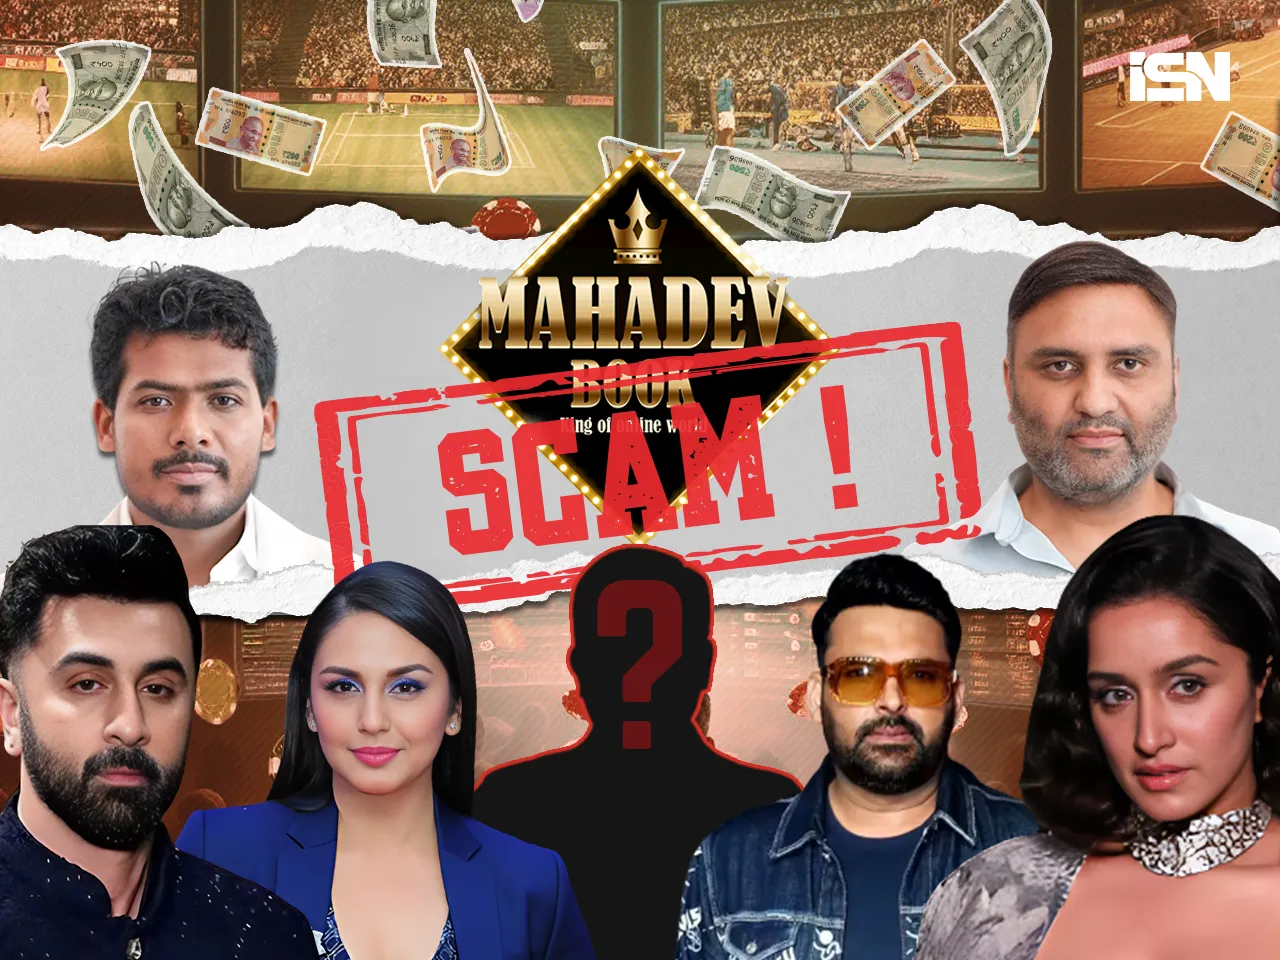 Mahadev app online betting scandal